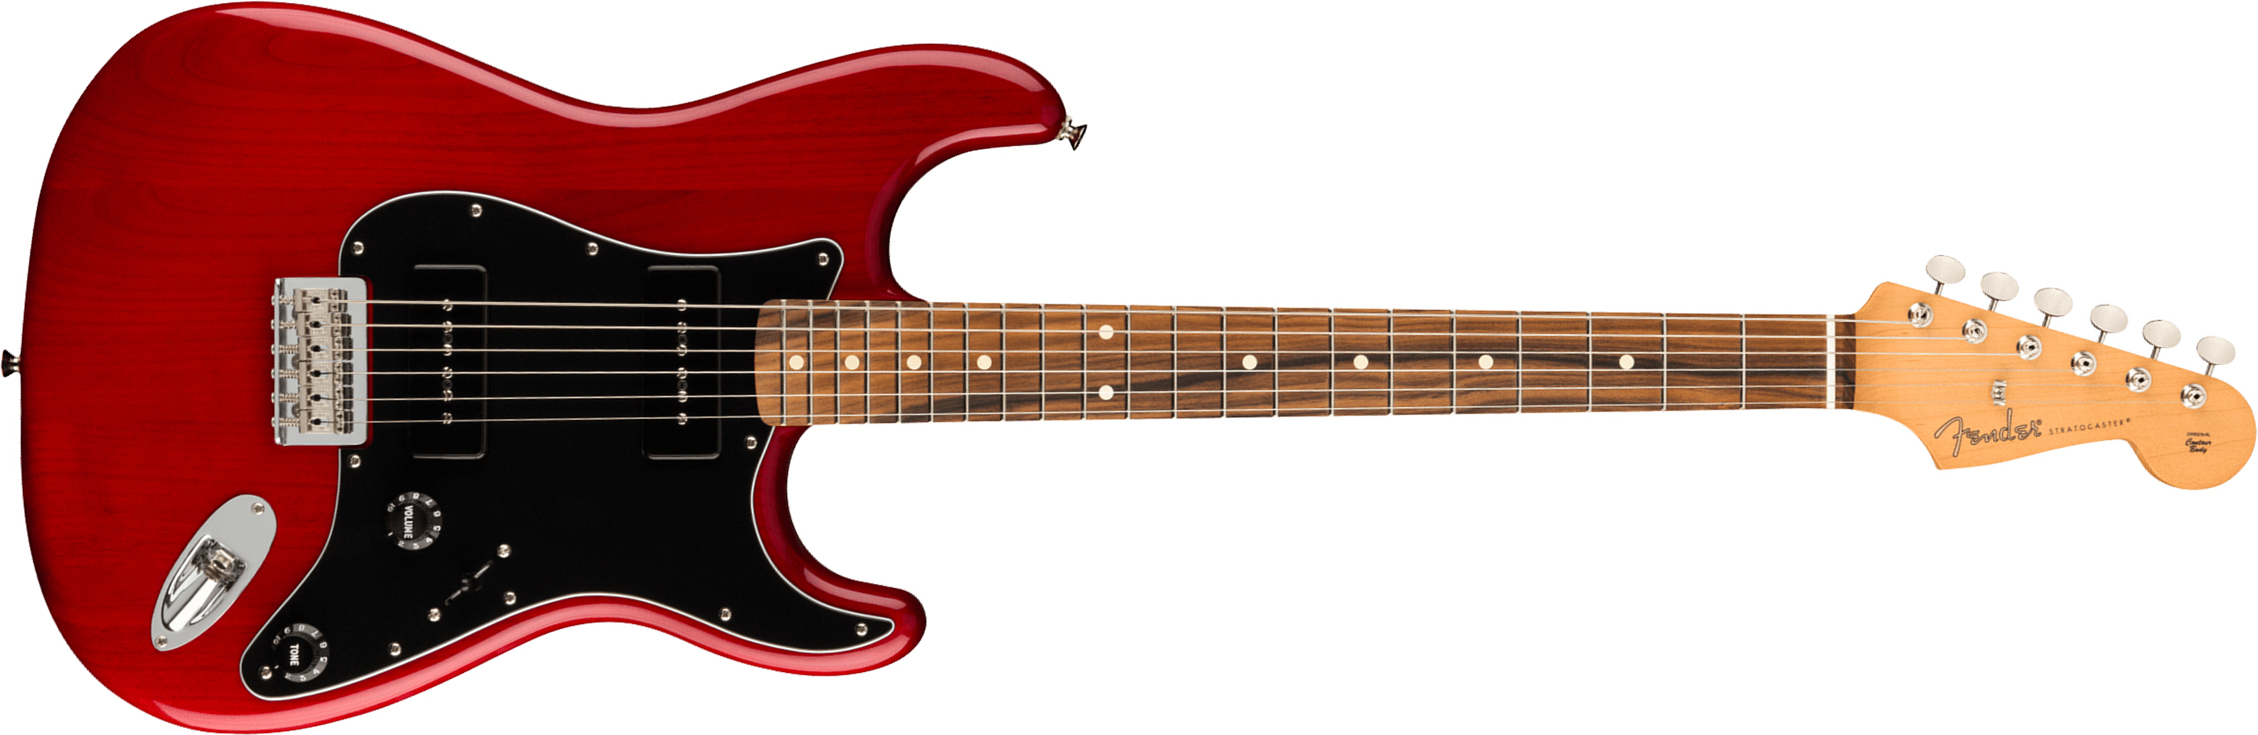 Fender Strat Noventa Mex Ss Ht Pf +housse - Crimson Red Transparent - Guitare Électrique Forme Str - Main picture